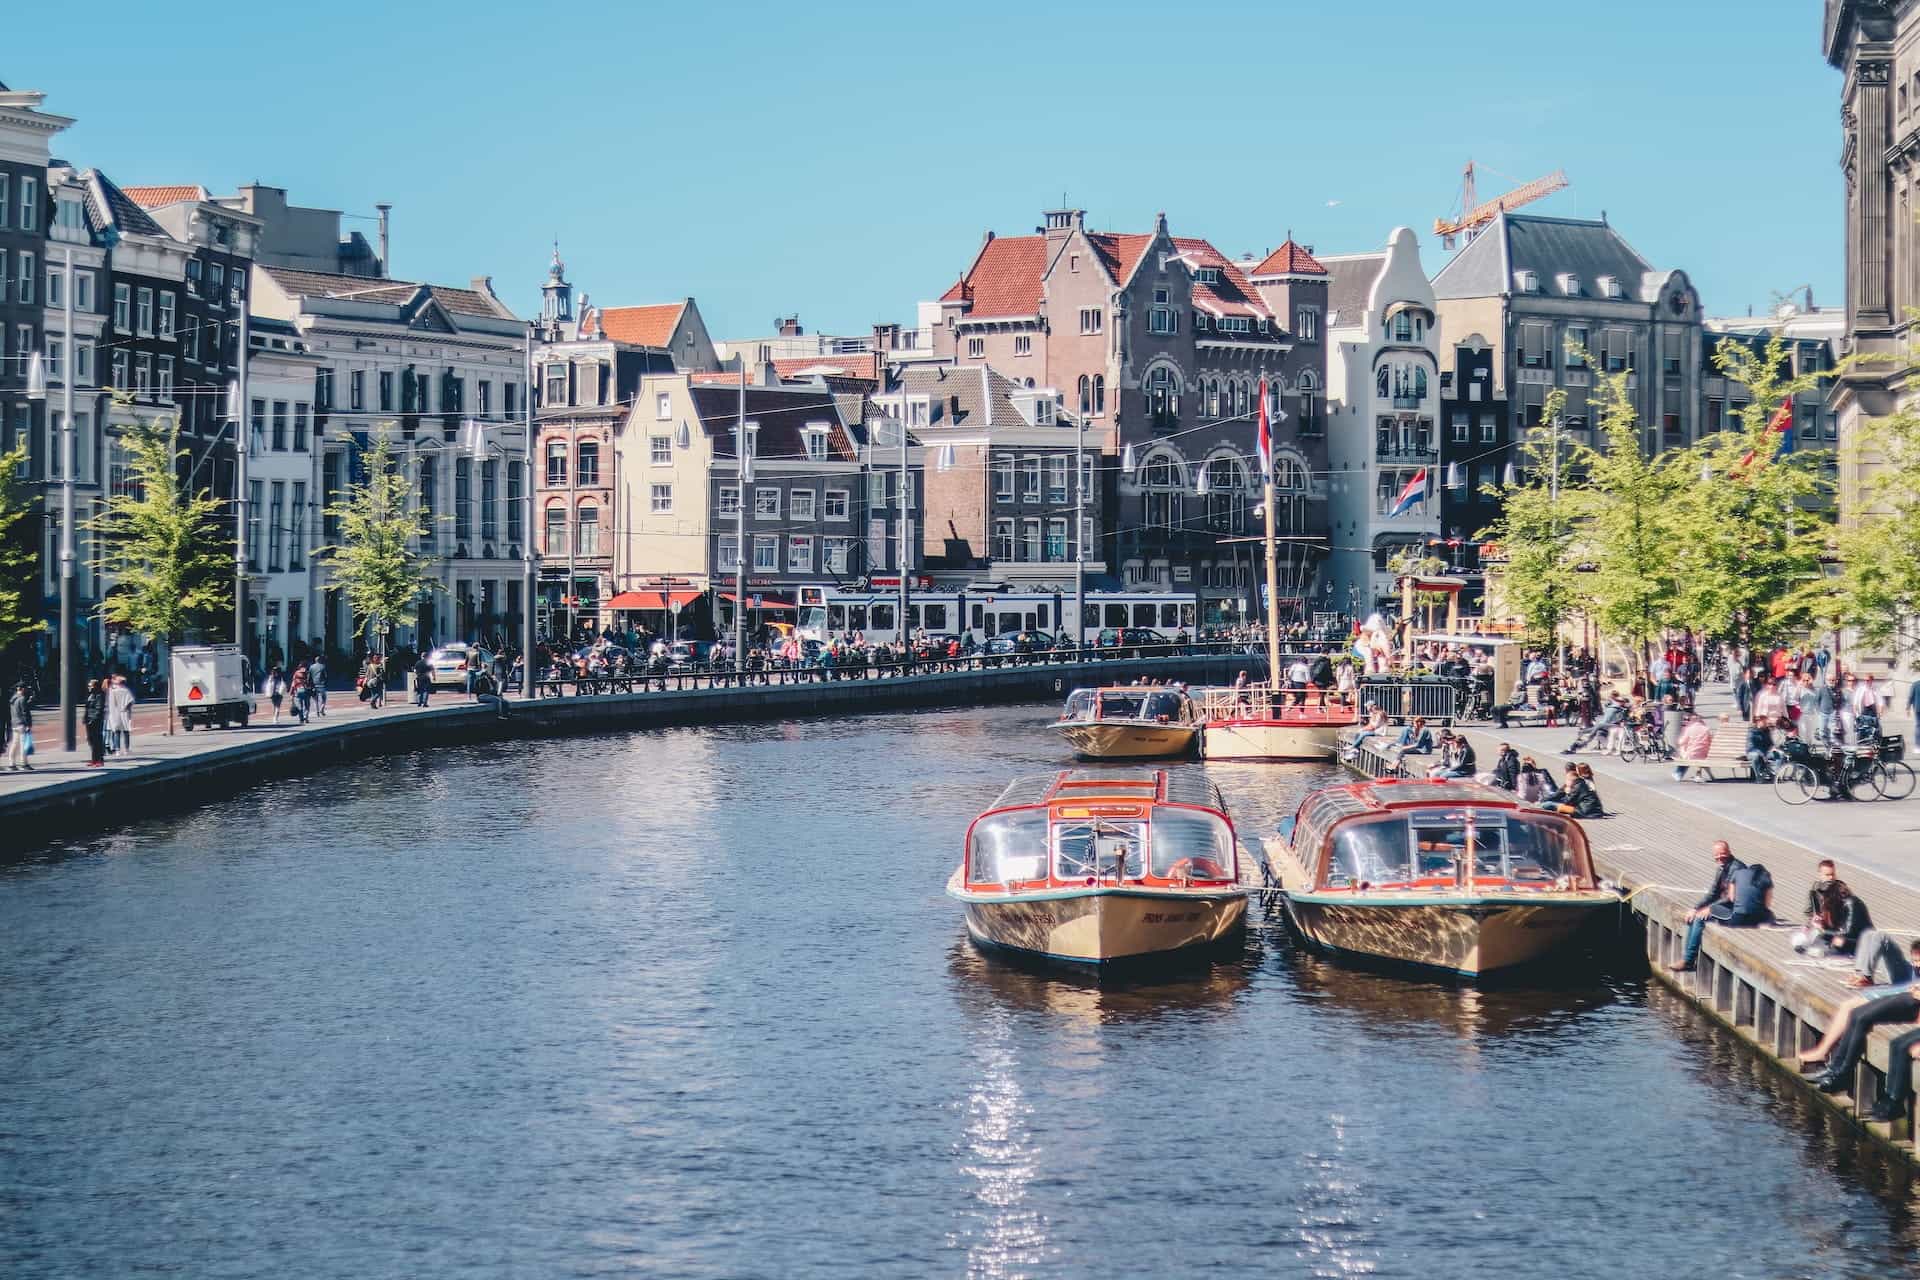 Kanal Amsterdam dengan dua perahu terlihat di air.